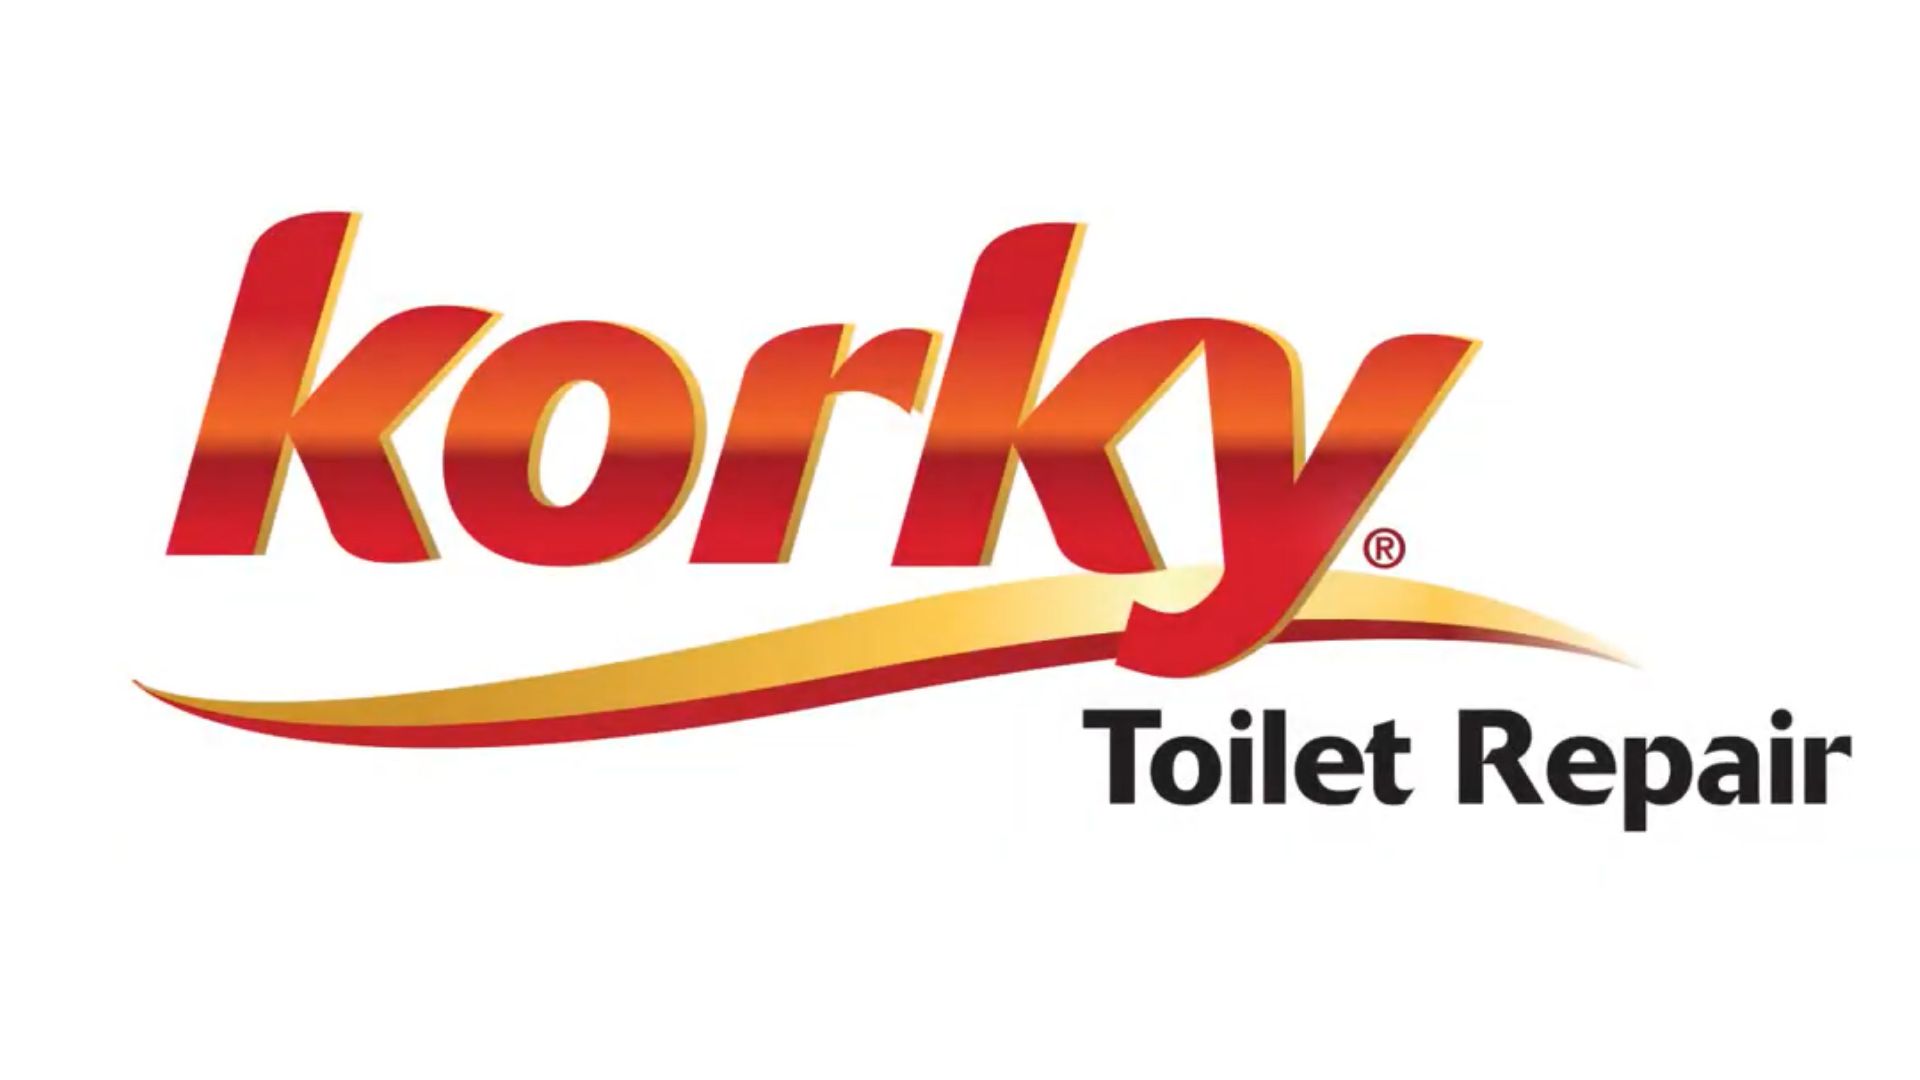 Korky Toilet Repair